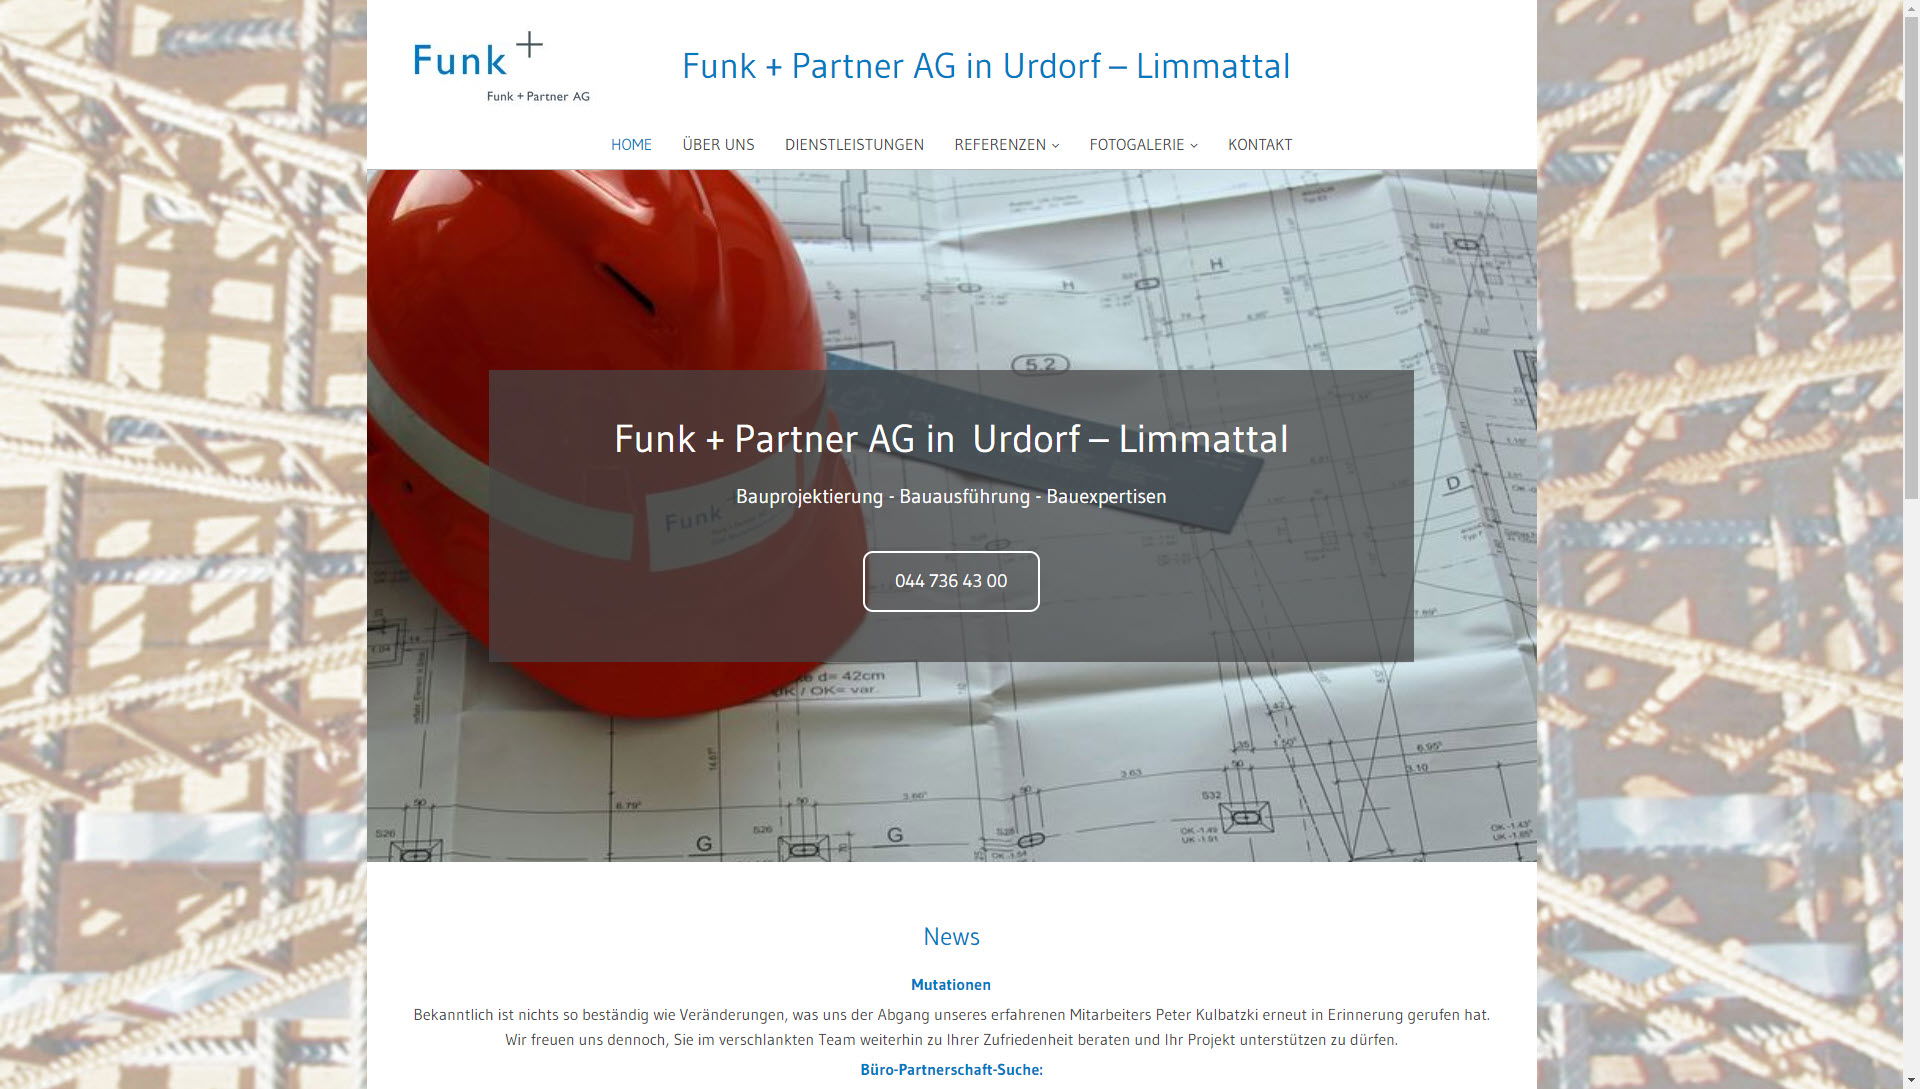 Funk + Partner AG